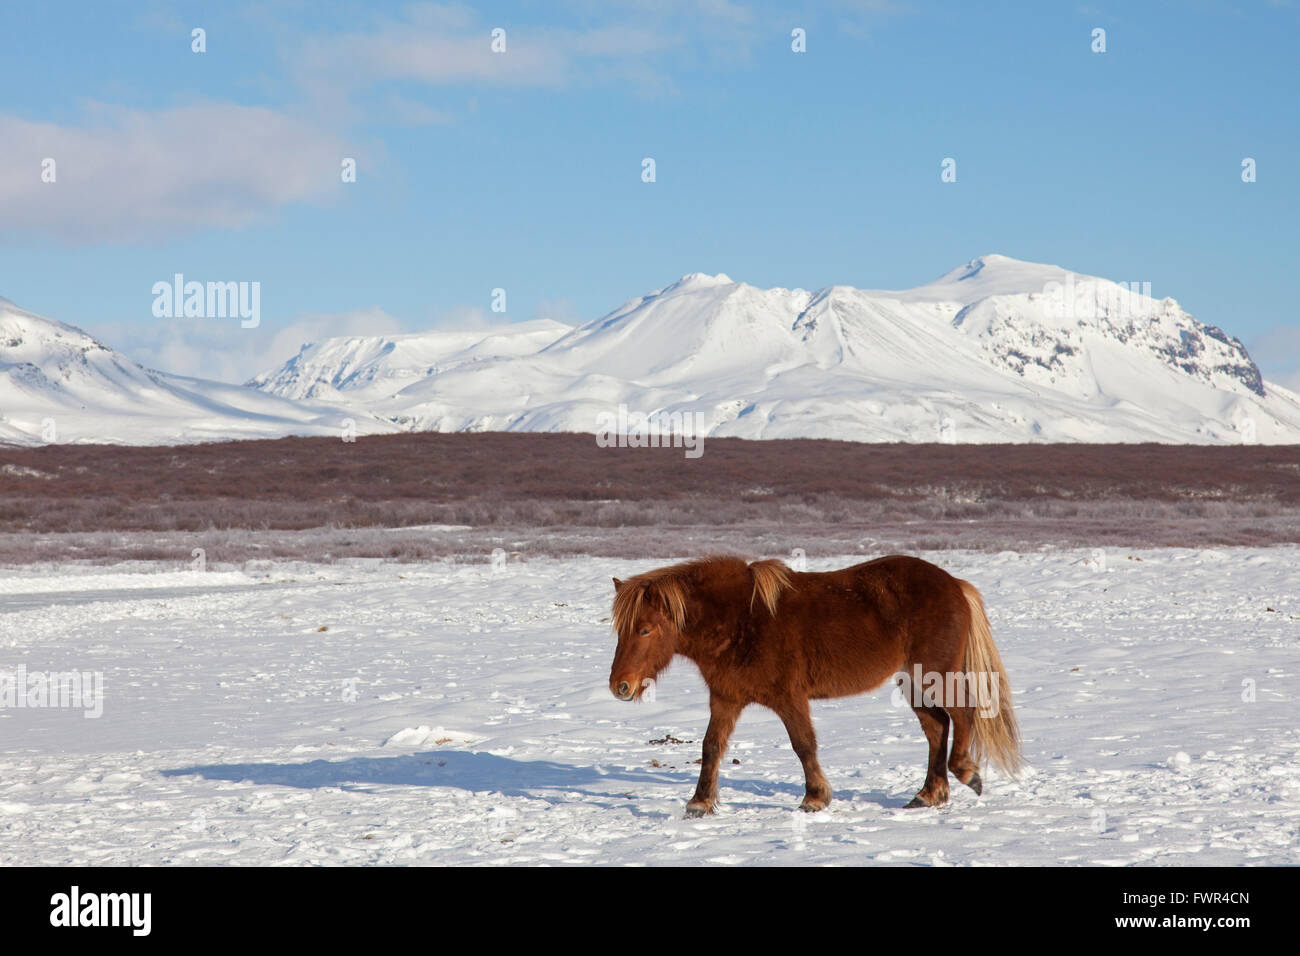 Icelandic horse (Equus ferus caballus / Equus Scandinavicus) in heavy winter coat in the snow on Iceland Stock Photo